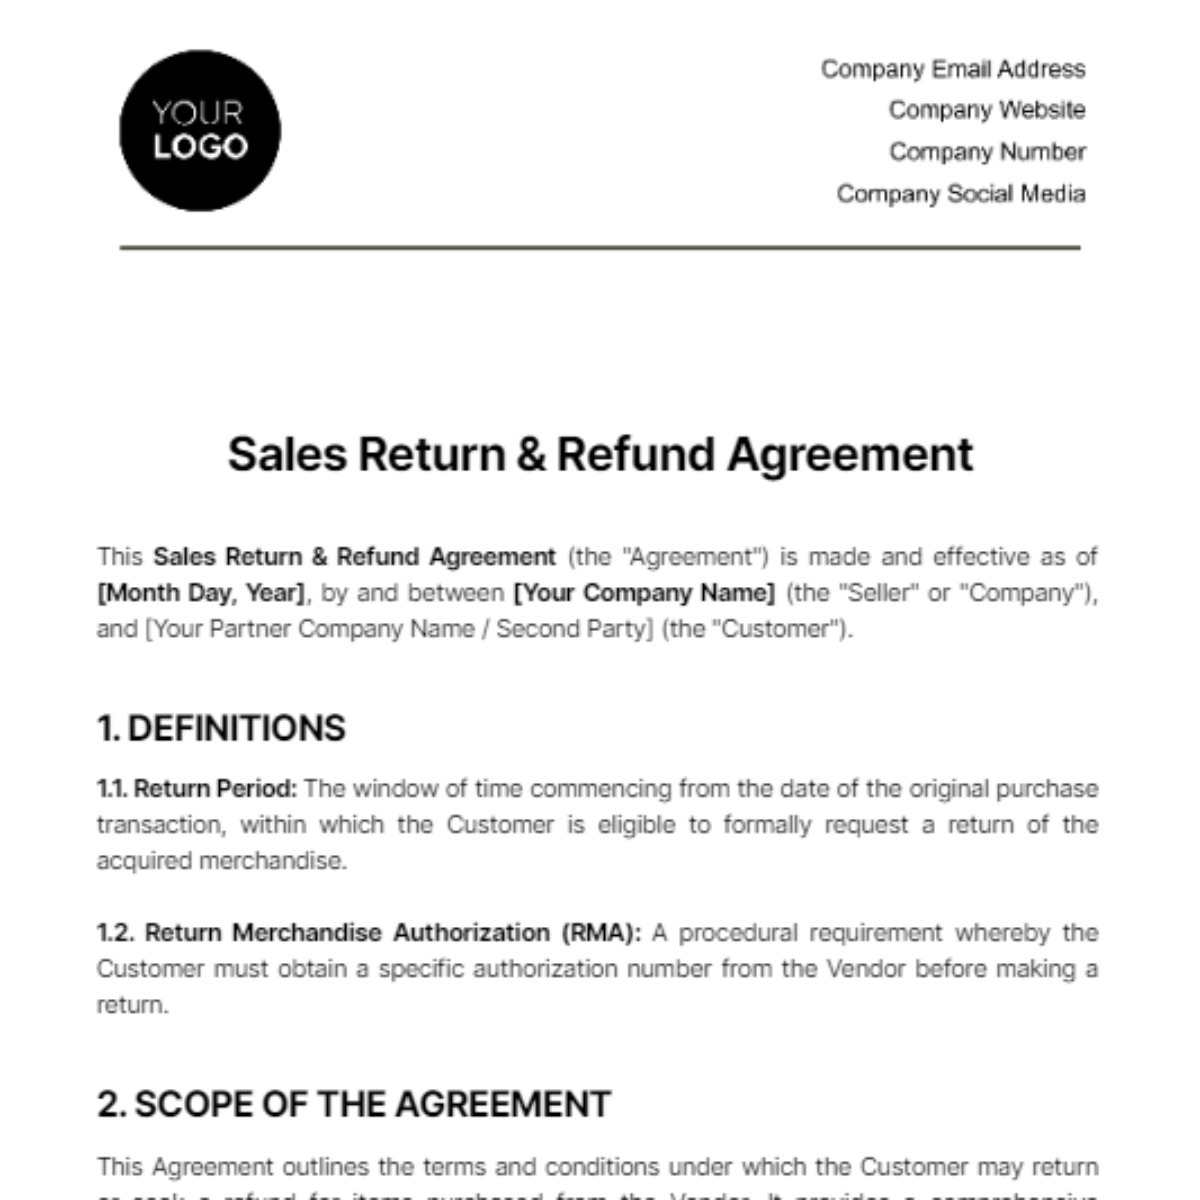 Sales Return & Refund Agreement Template